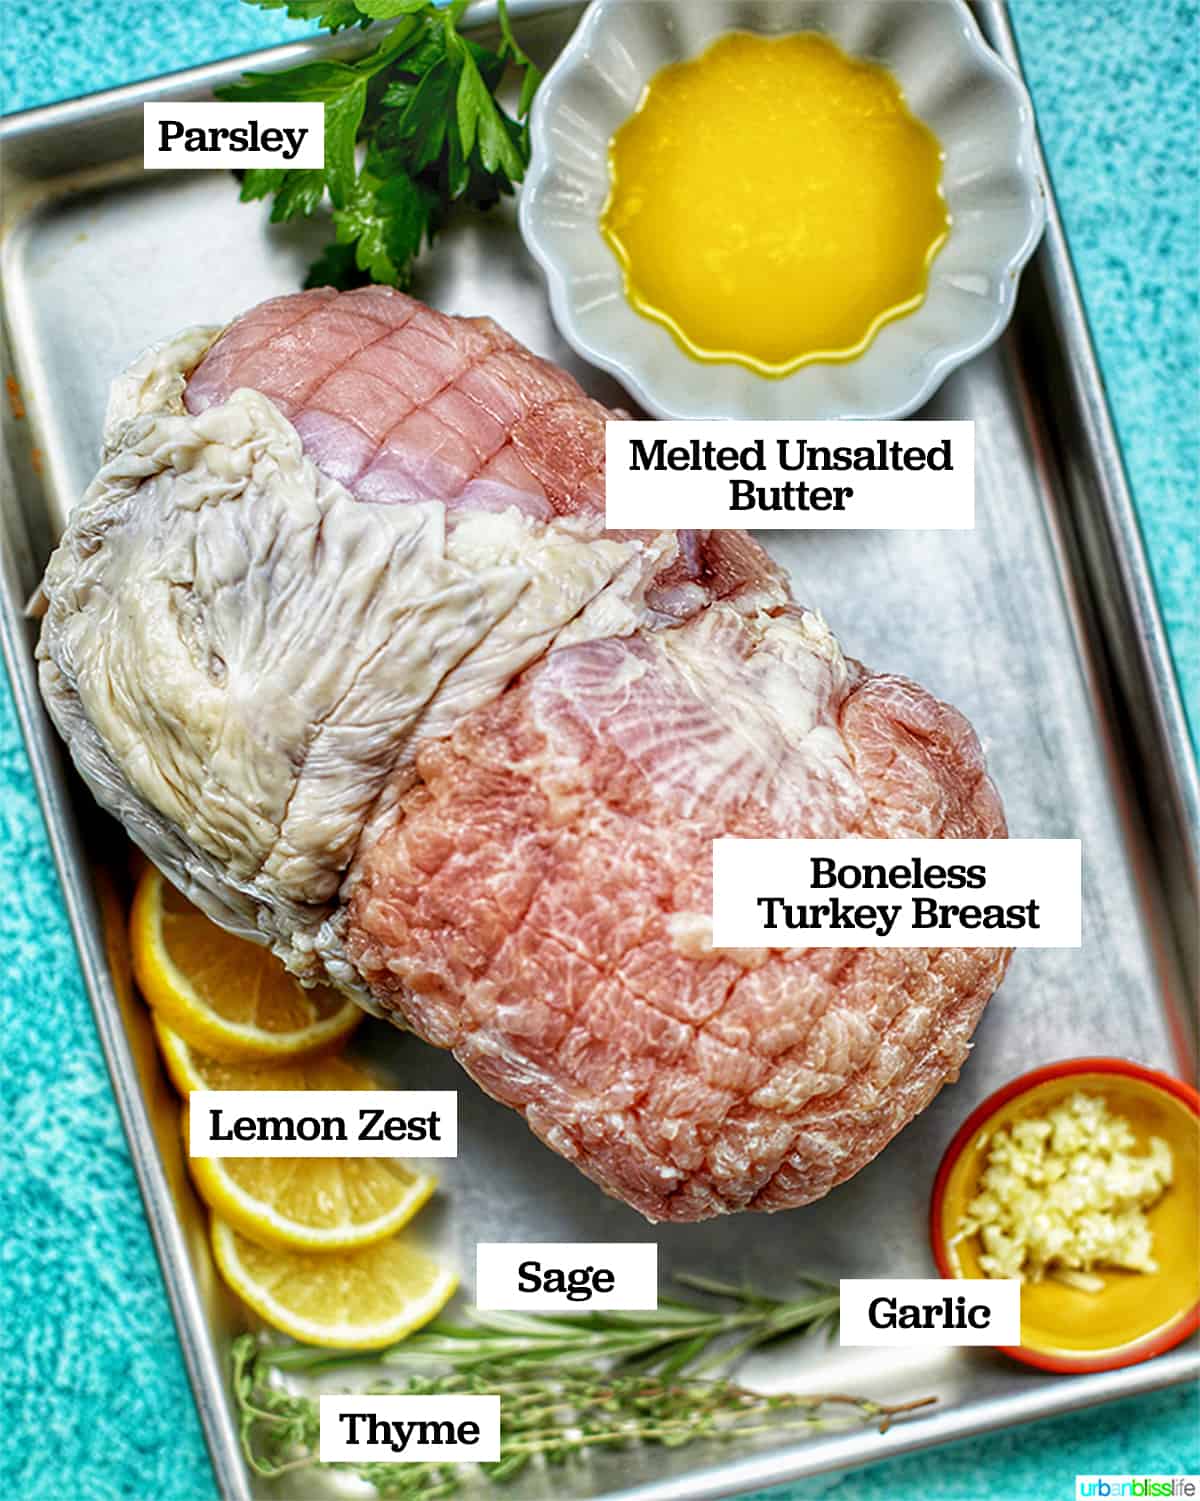 turkey breast ingredients on baking sheet against blue backdrop.